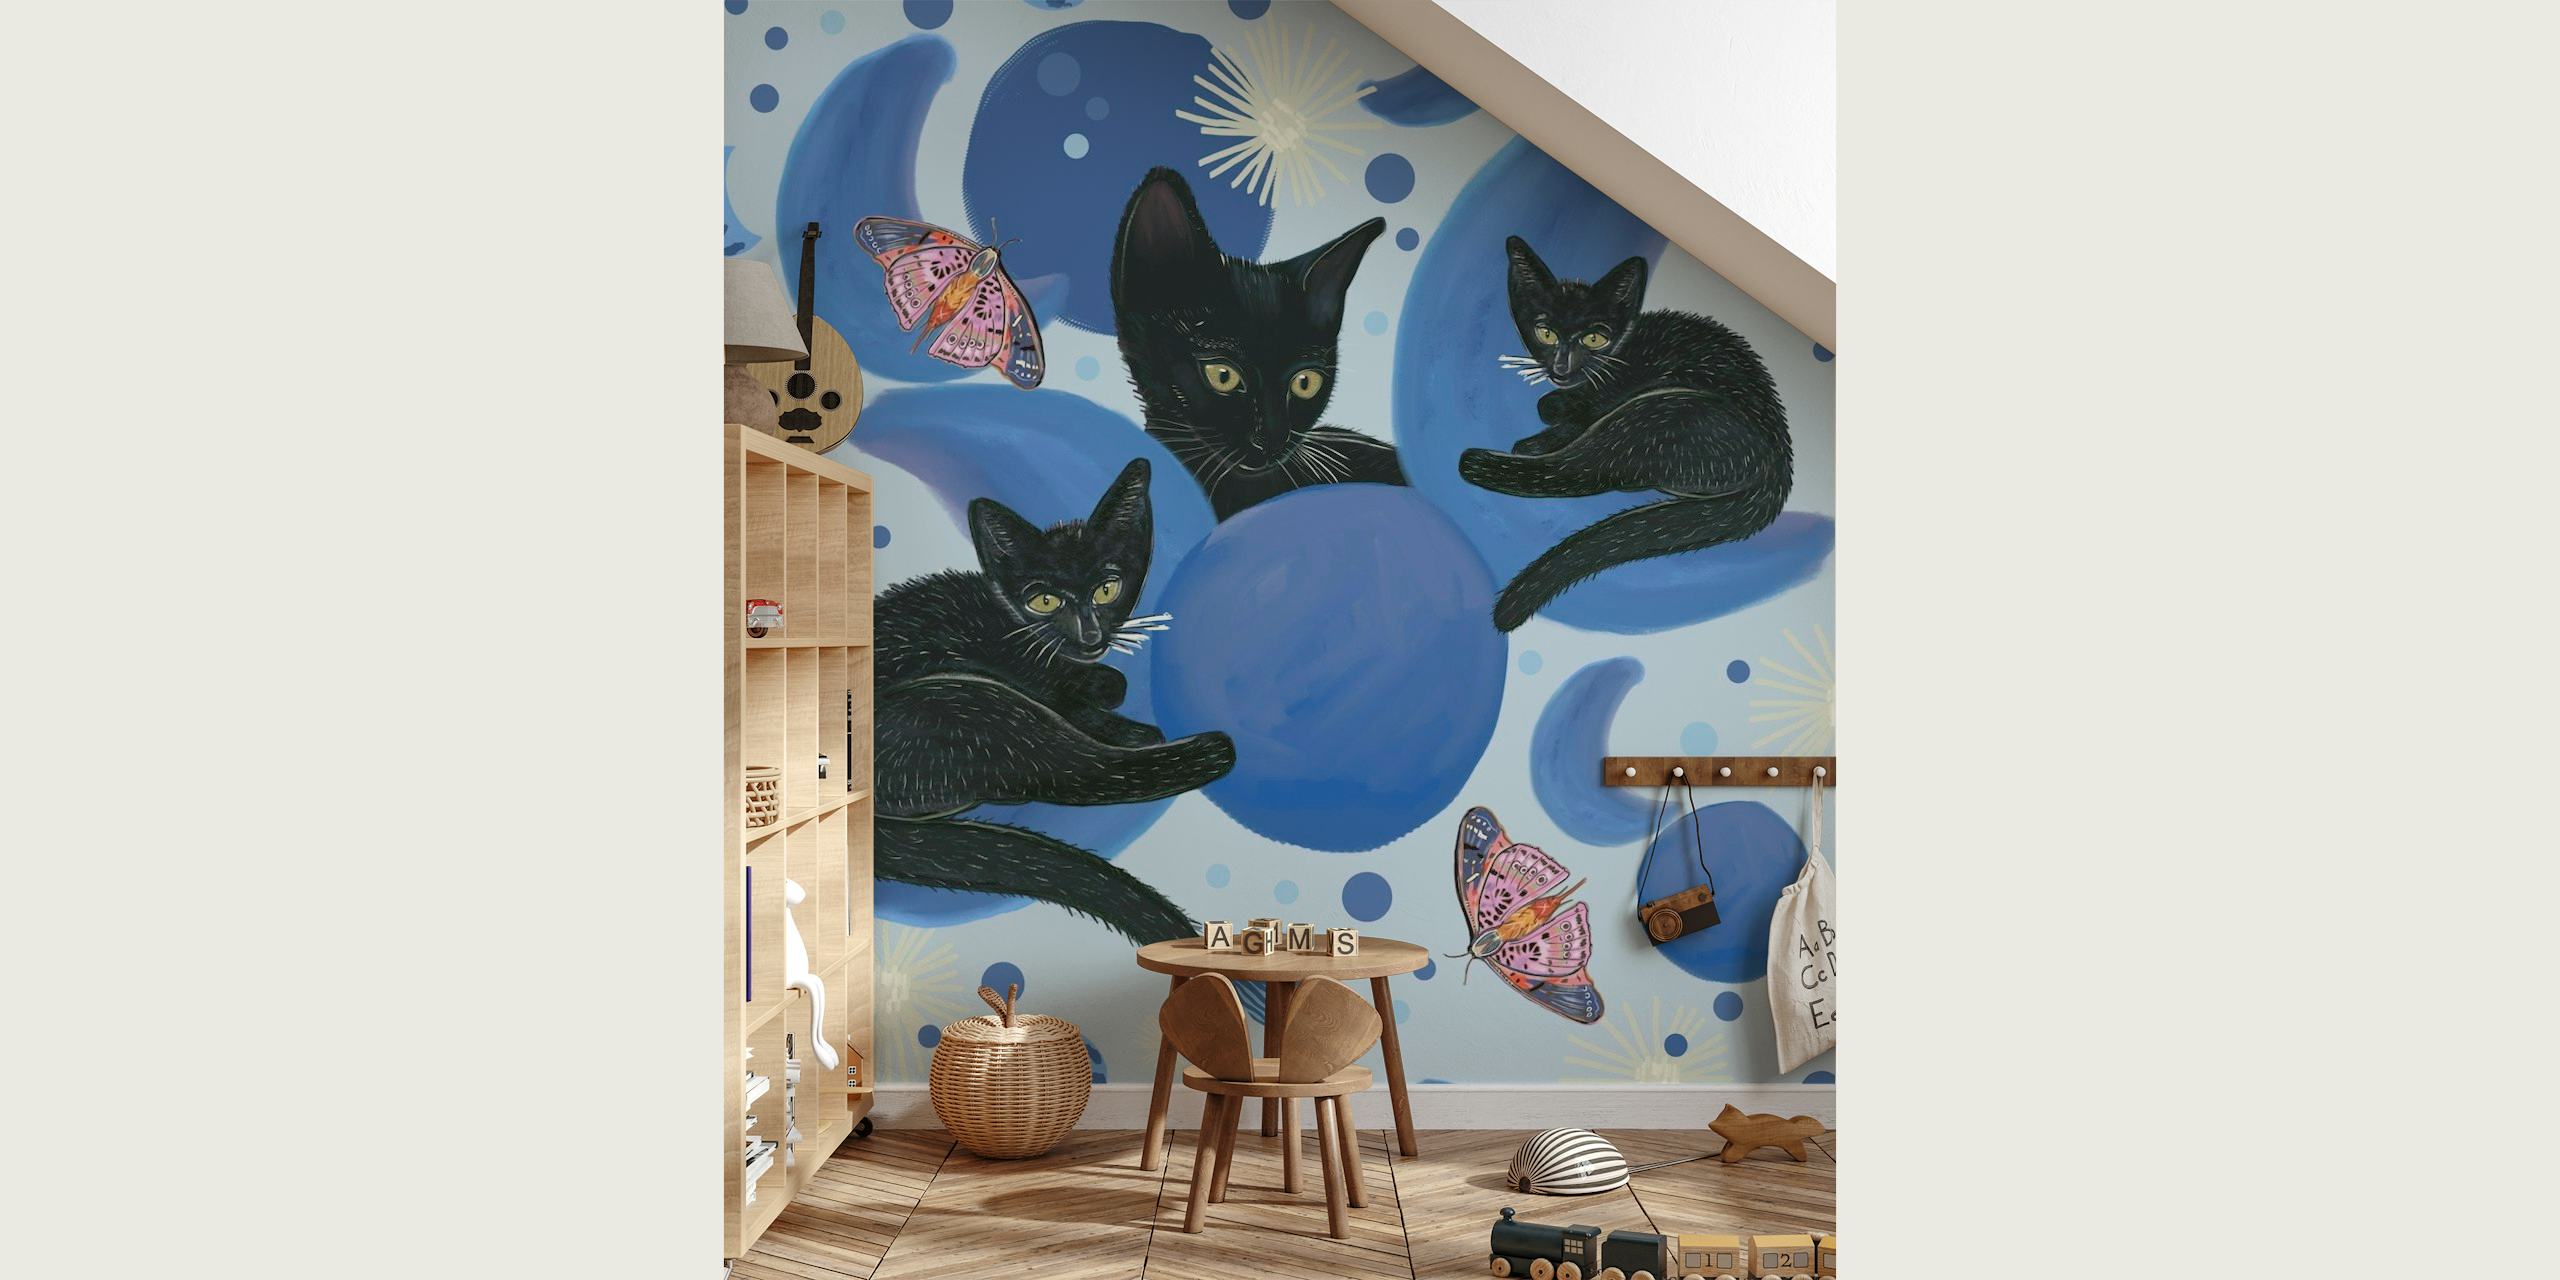 Svarta katter varvat med månfaser och stjärnor på en väggmålning